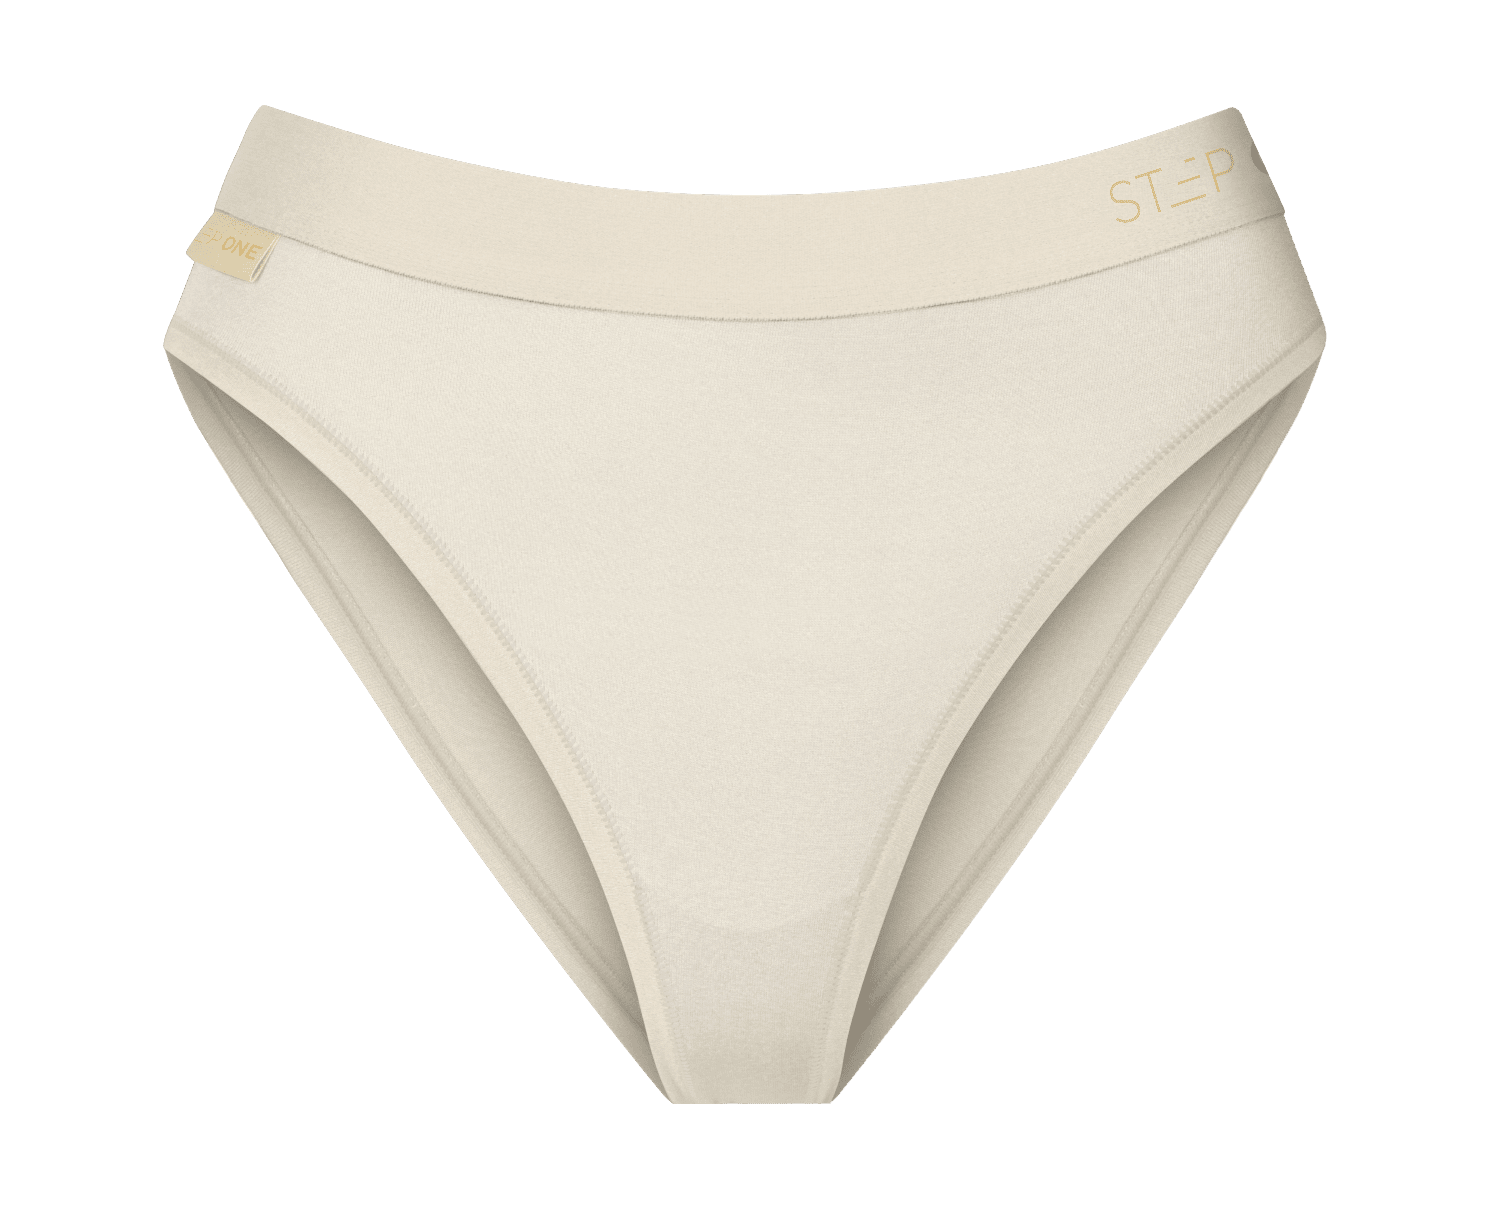 Low Price Factory Underpants Underwear Wholesale Women Cotton